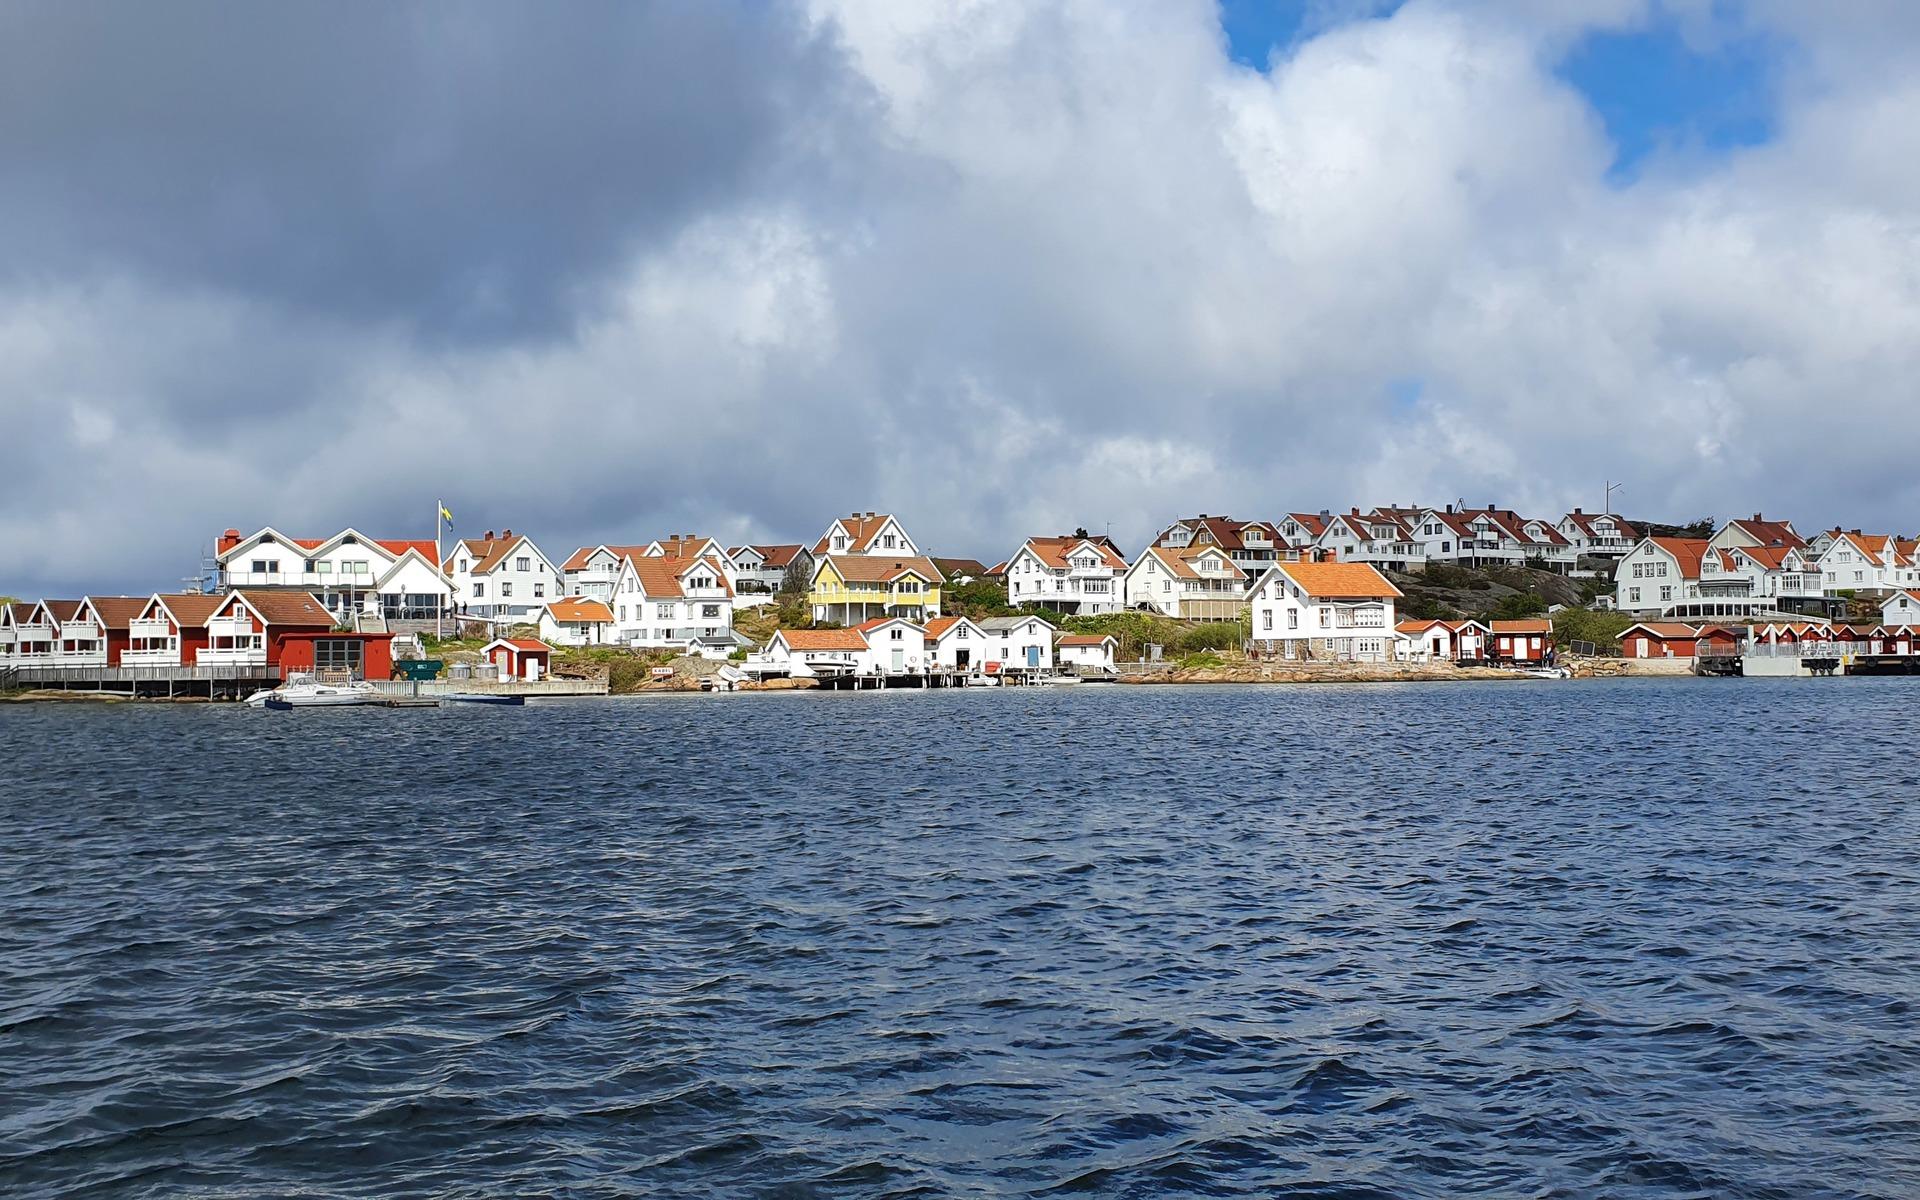 Gullholmen är ett av Bohusläns äldsta fiskelägen, med anor troligtvis redan från 1200-talet. Ena delen av samhället ligger på en liten ö som brukar kallas för Sveriges mest tätbebyggda ö, tack vare ett tätt myller av hus. Andra halvan av samhället ligger på Härmanö, ett av Bohusläns största naturreservat